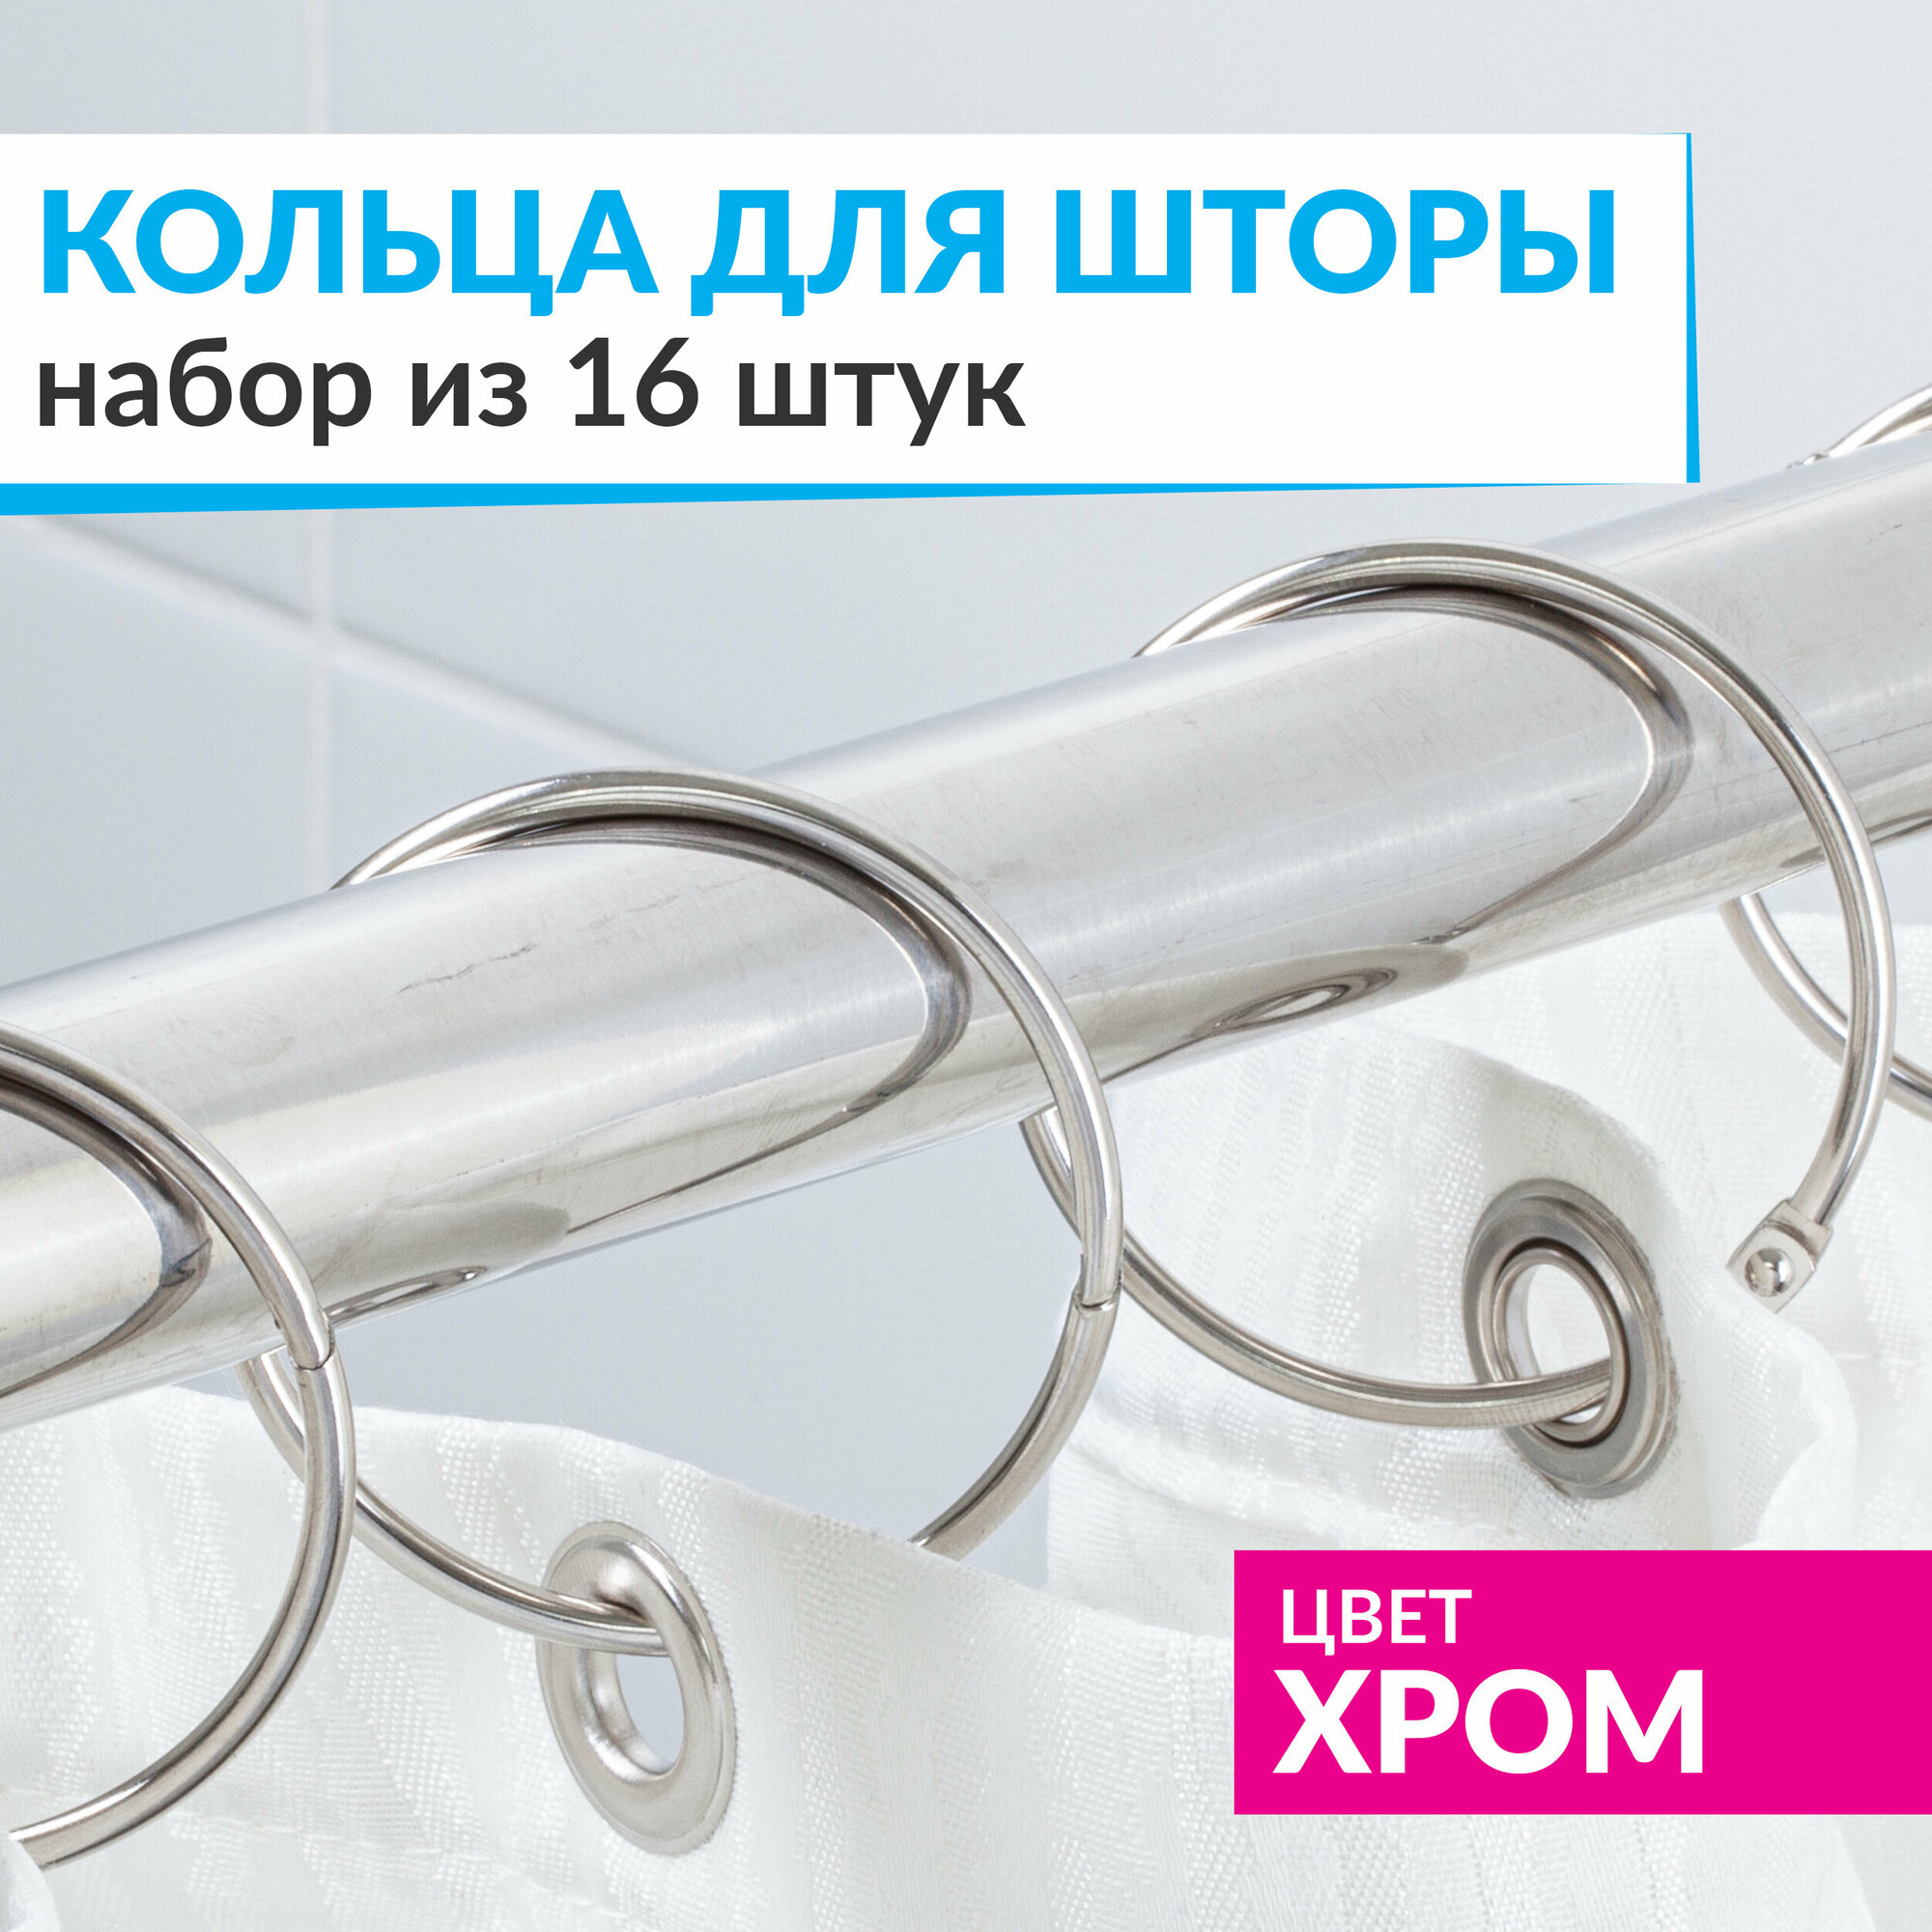 Кольца для шторы в ванную комнату для карниза хром / металлические держатели для штор и занавесок 16 шт.